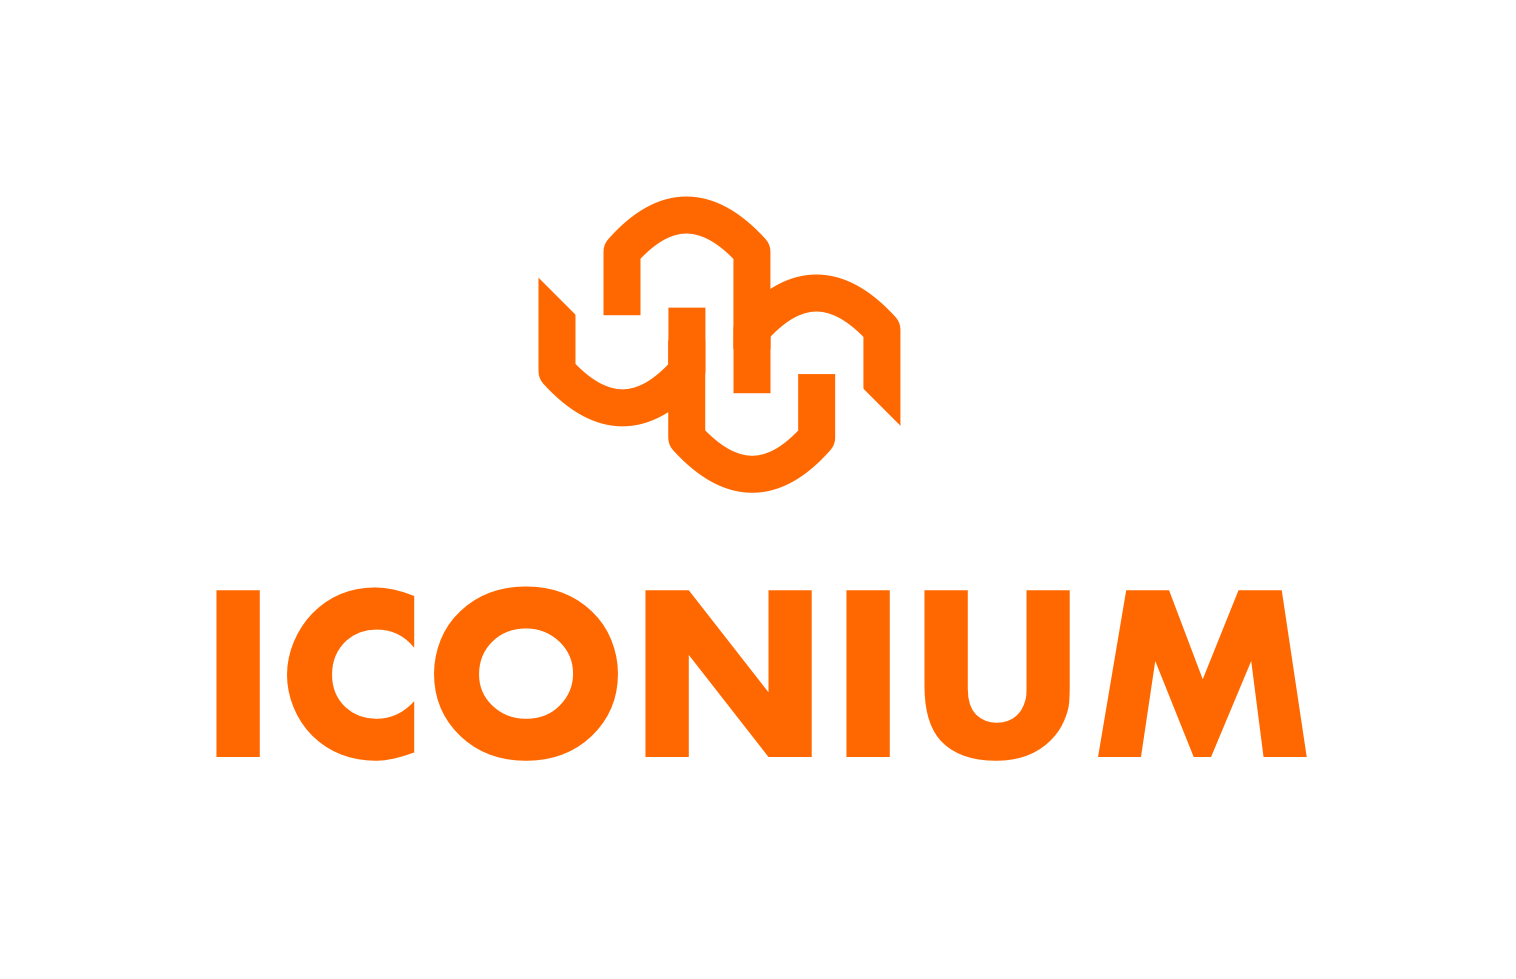 ICONIUM — 19 Investments, Exits, 18 Portfolio companies — Unicorn Nest